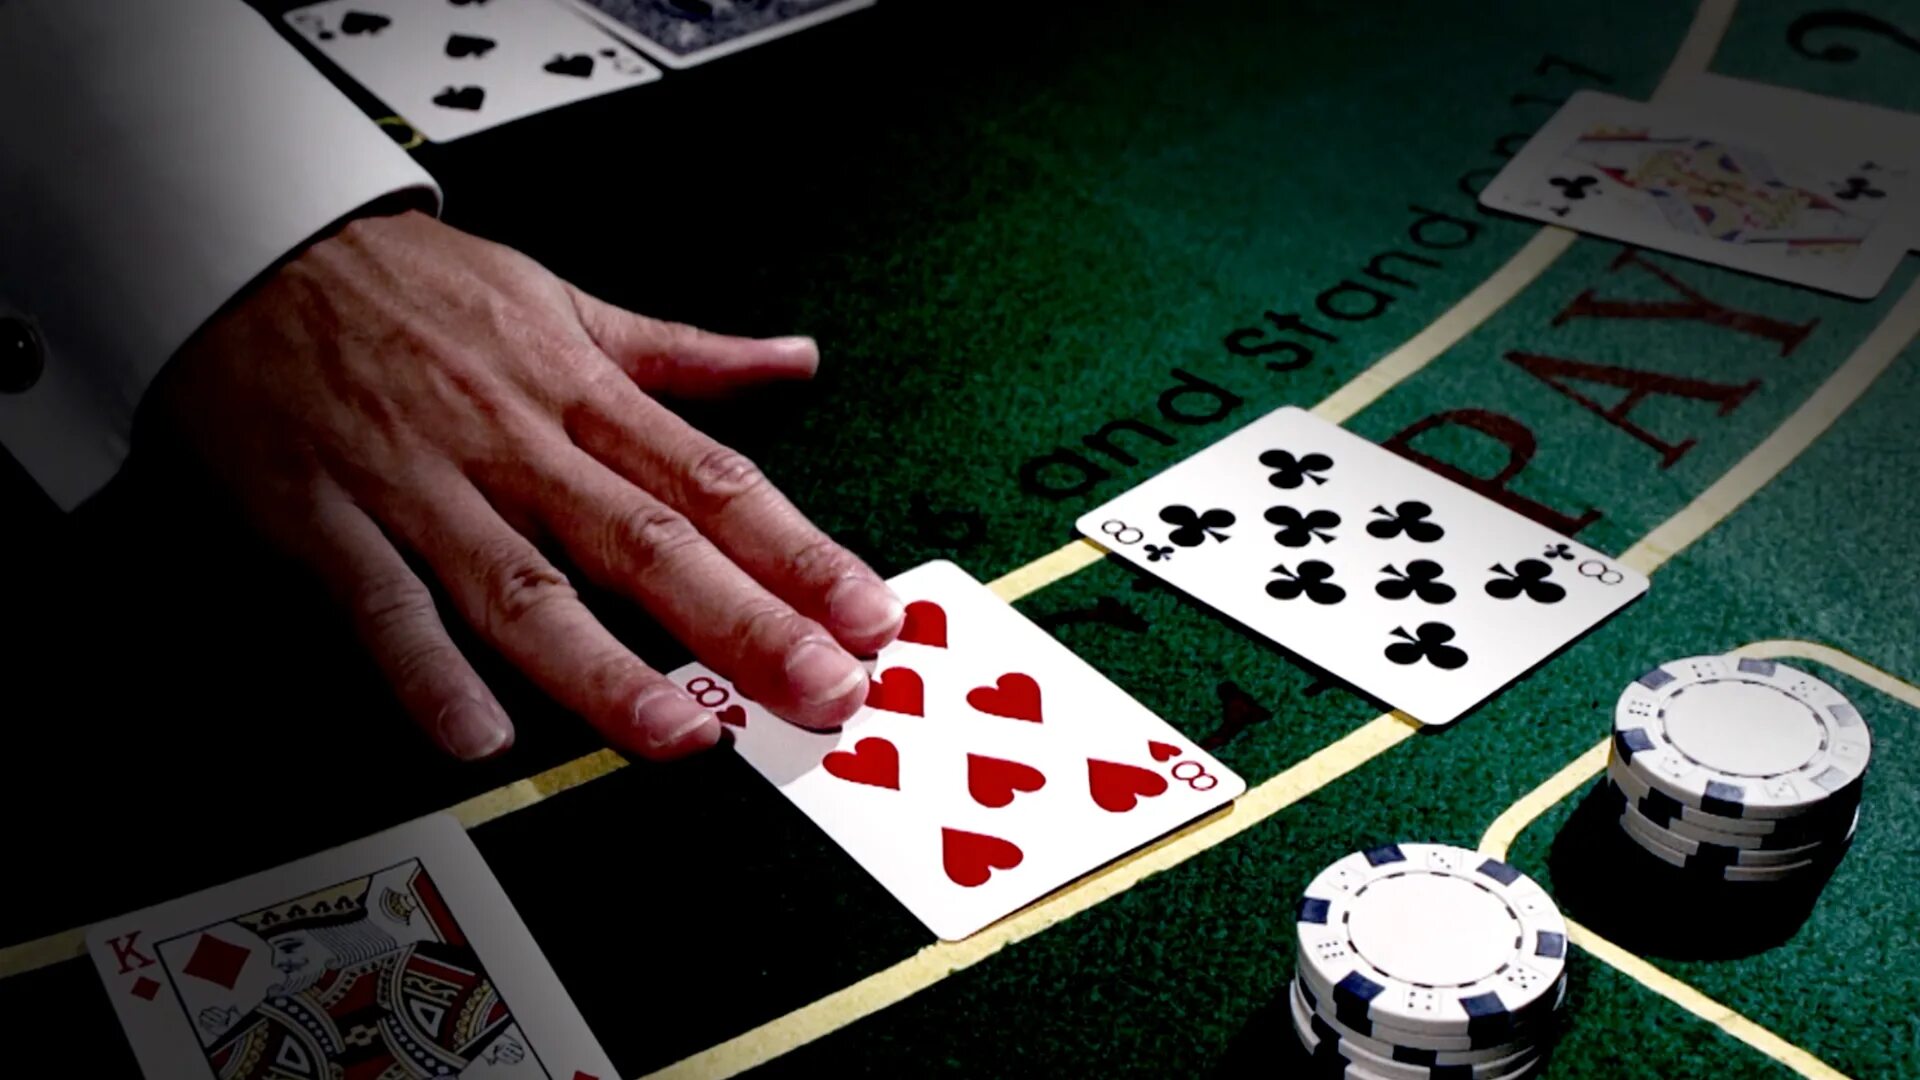 Азартная карточная игра. Баккара азартная игра. Карты азартные игры казино. Интернет казино - игровые автоматы, Покер, карточные игры, Poker, Рулетка. Азартные игры темы